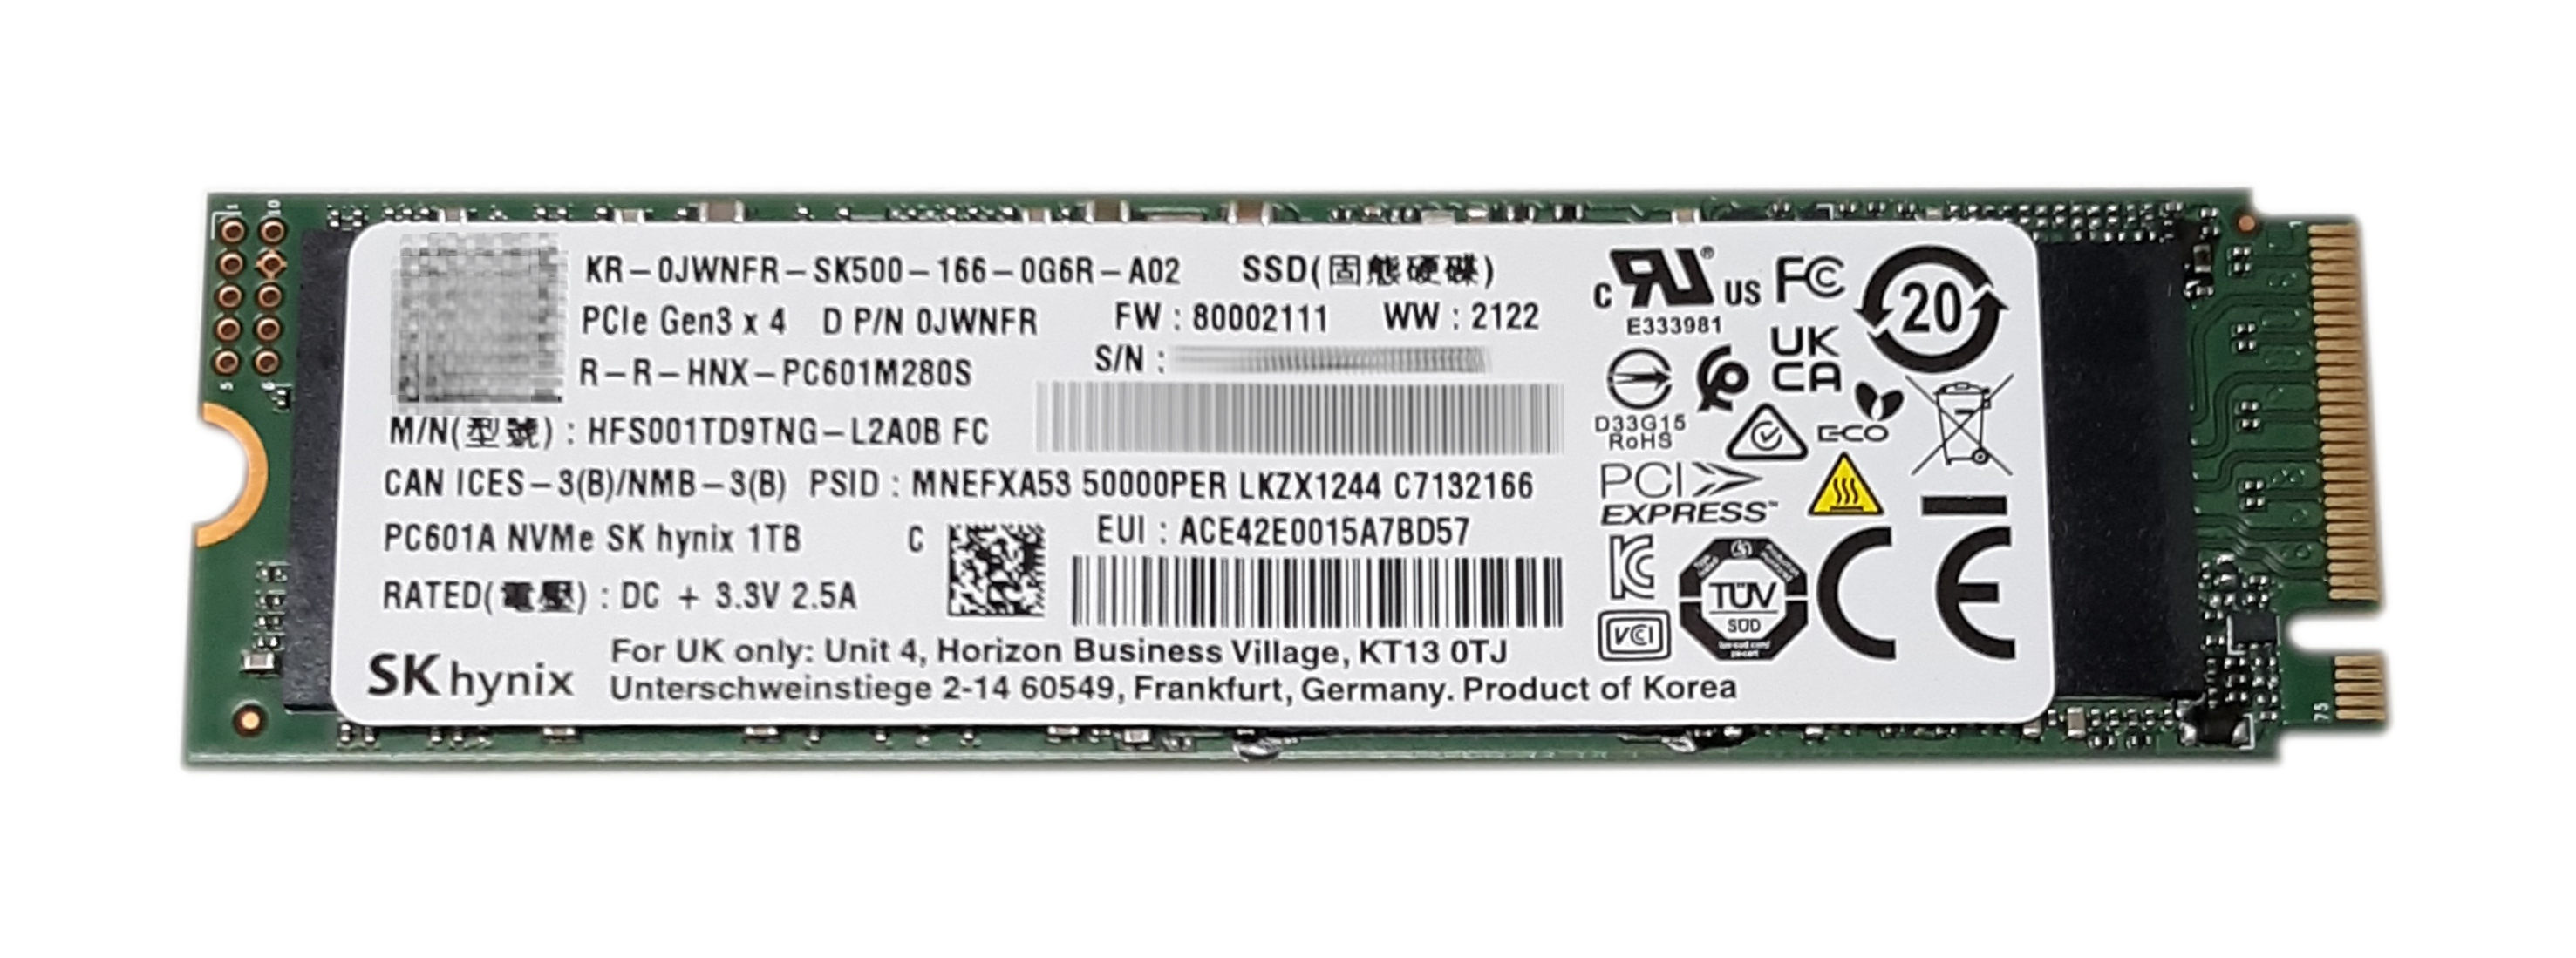 Dell HyniX 1TB PC601A HFS01TD9TNG-L2A0B SSD M.2 NVMe Drive PCIe x4 Gen3 JWNFR